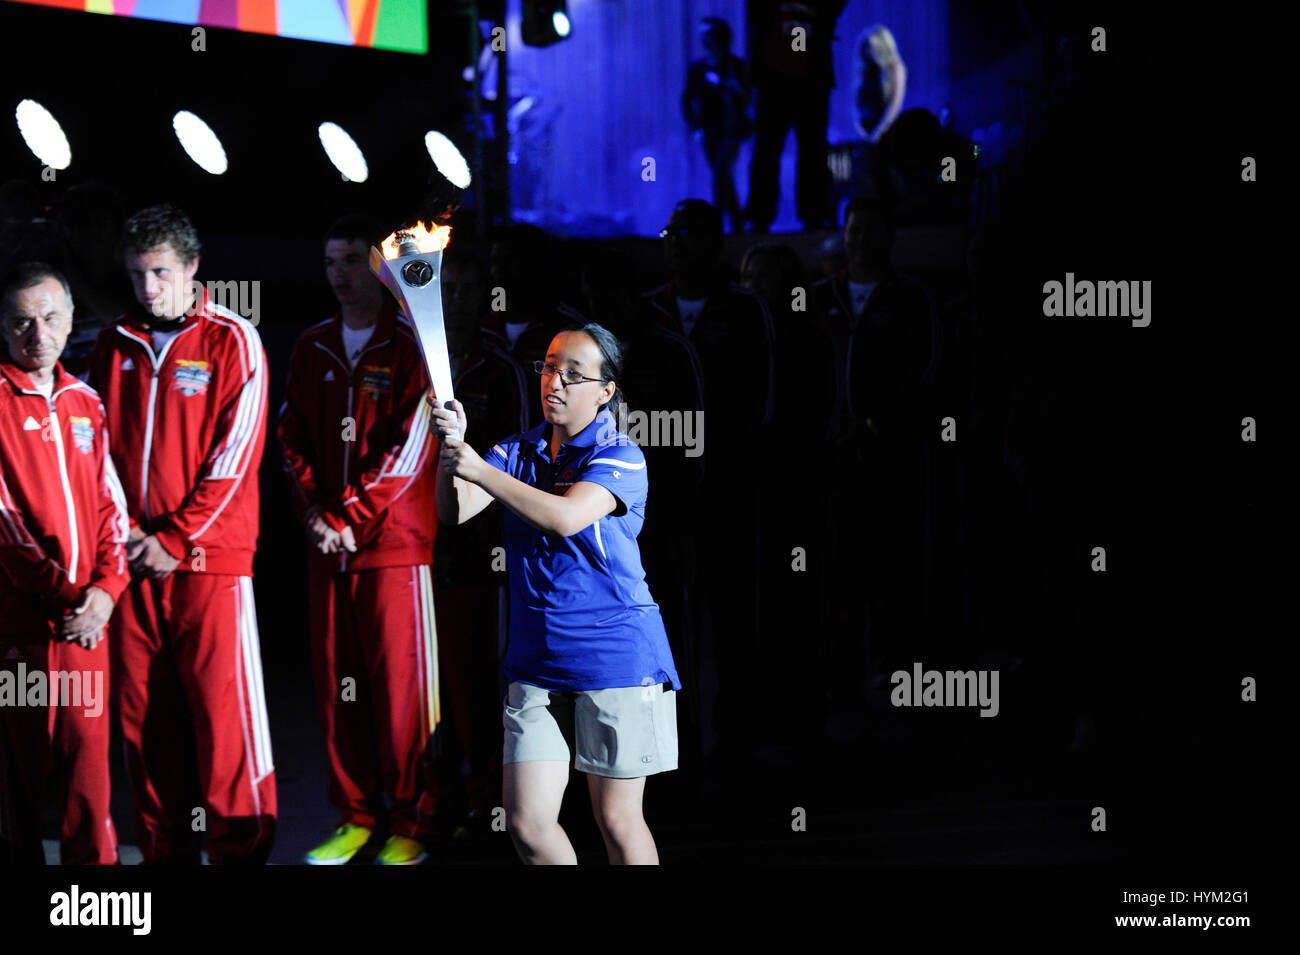 Ceremonia de encendido de la antorcha con atletas de los Juegos Olímpicos Especiales Mundiales de Ceremonia de Apertura en el Coliseum el 25 de julio de 2015 en Los Angeles, California. Foto de stock